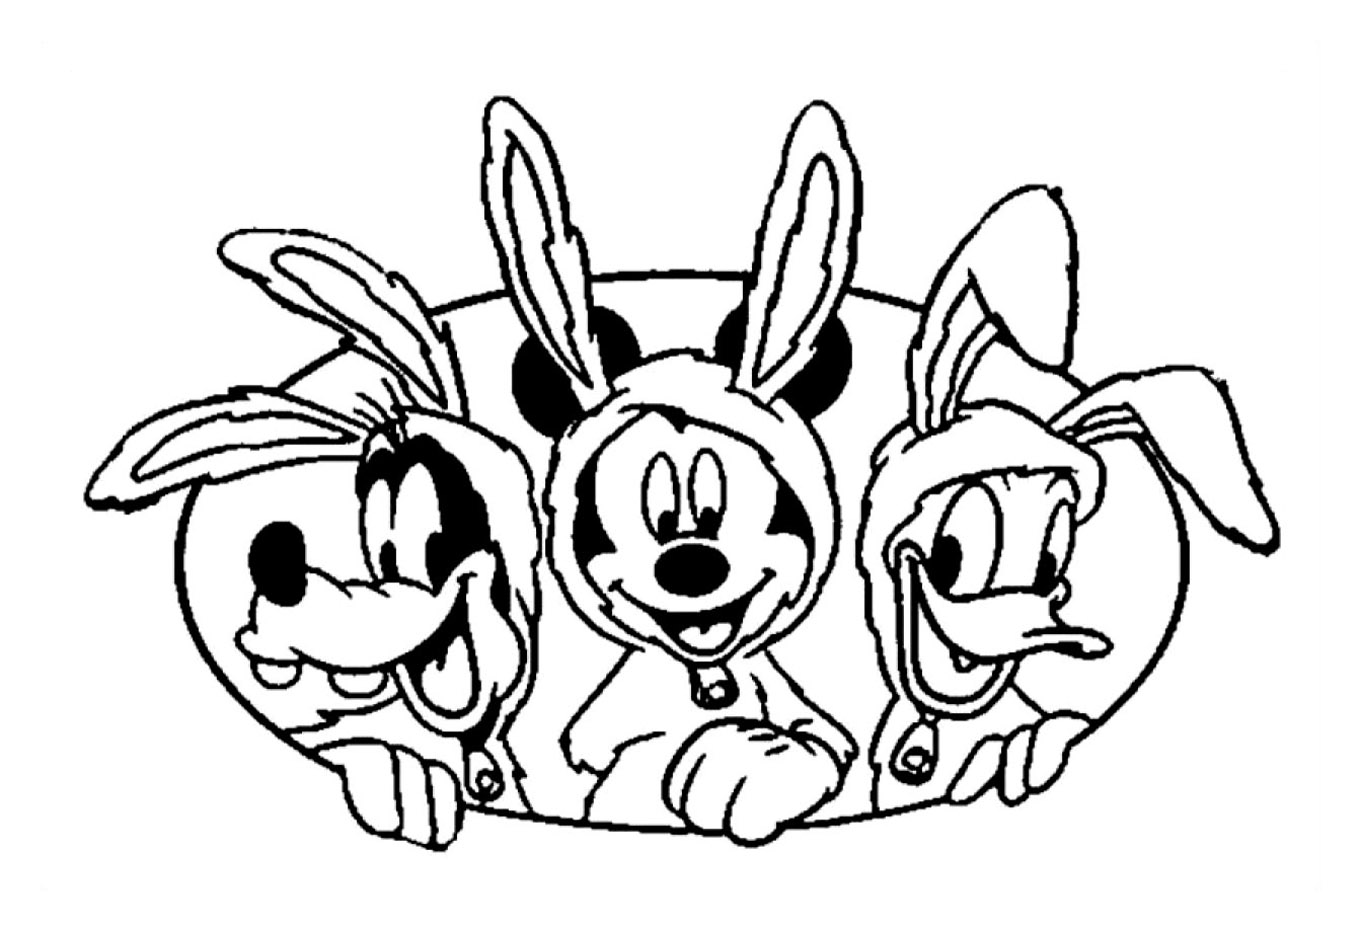 Desenhos simples para colorir gratuitos para crianças de Mickey e seus amigos